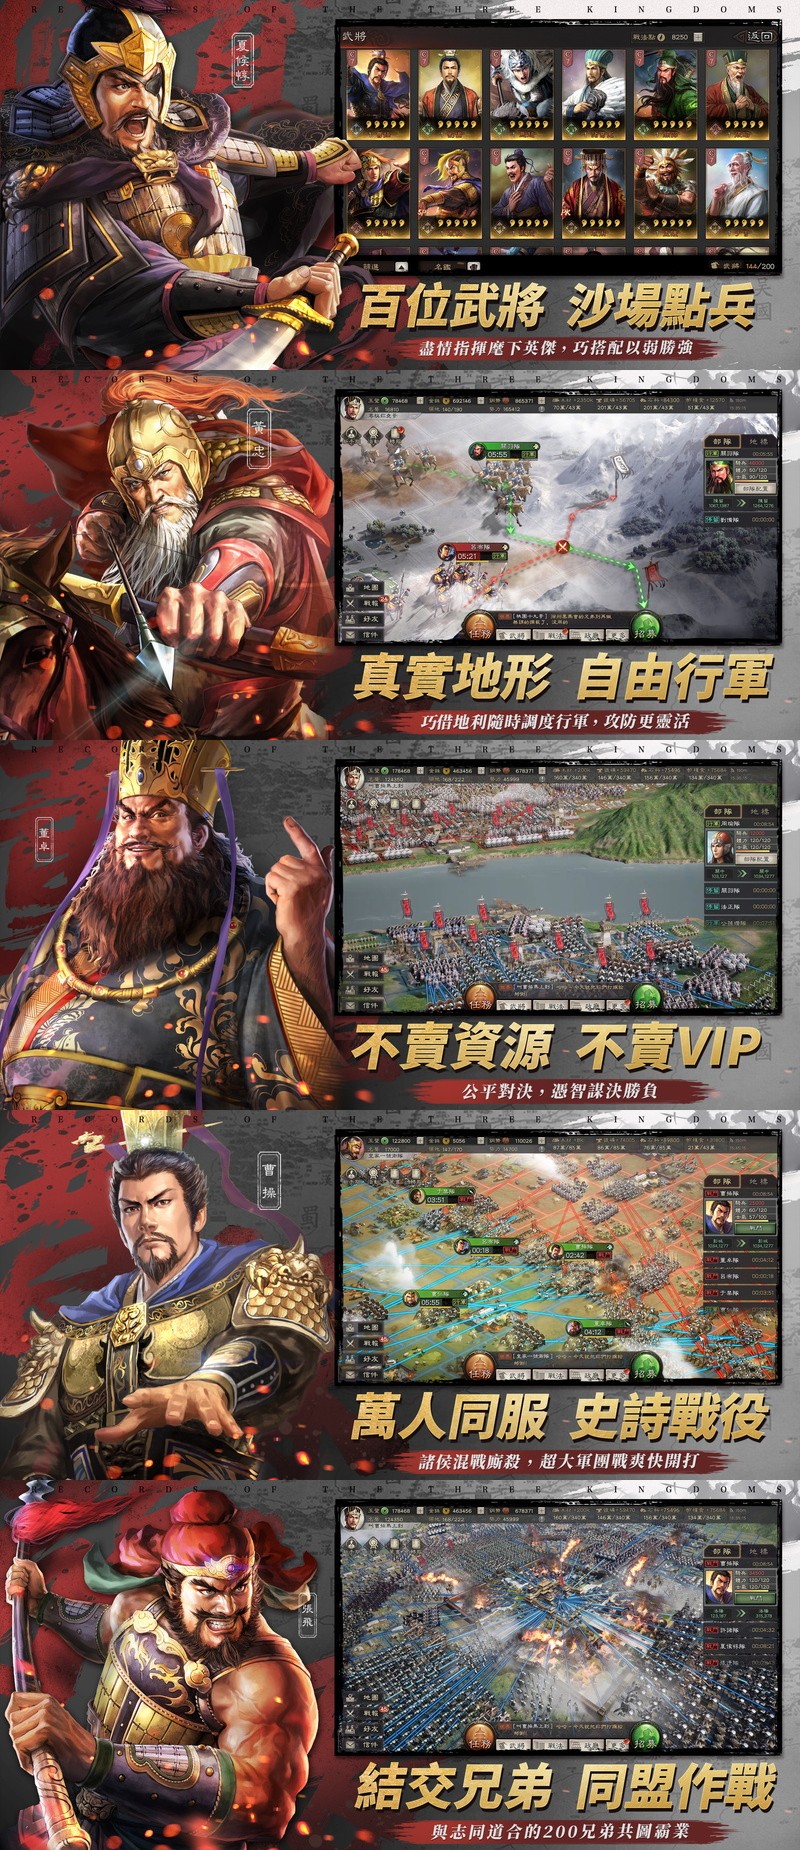 コーエーテクモがライセンス許諾する 三国志 戦略版 繁体字版が1月8日より正式サービス開始 台湾売上ランキング2位と好スタート Social Game Info